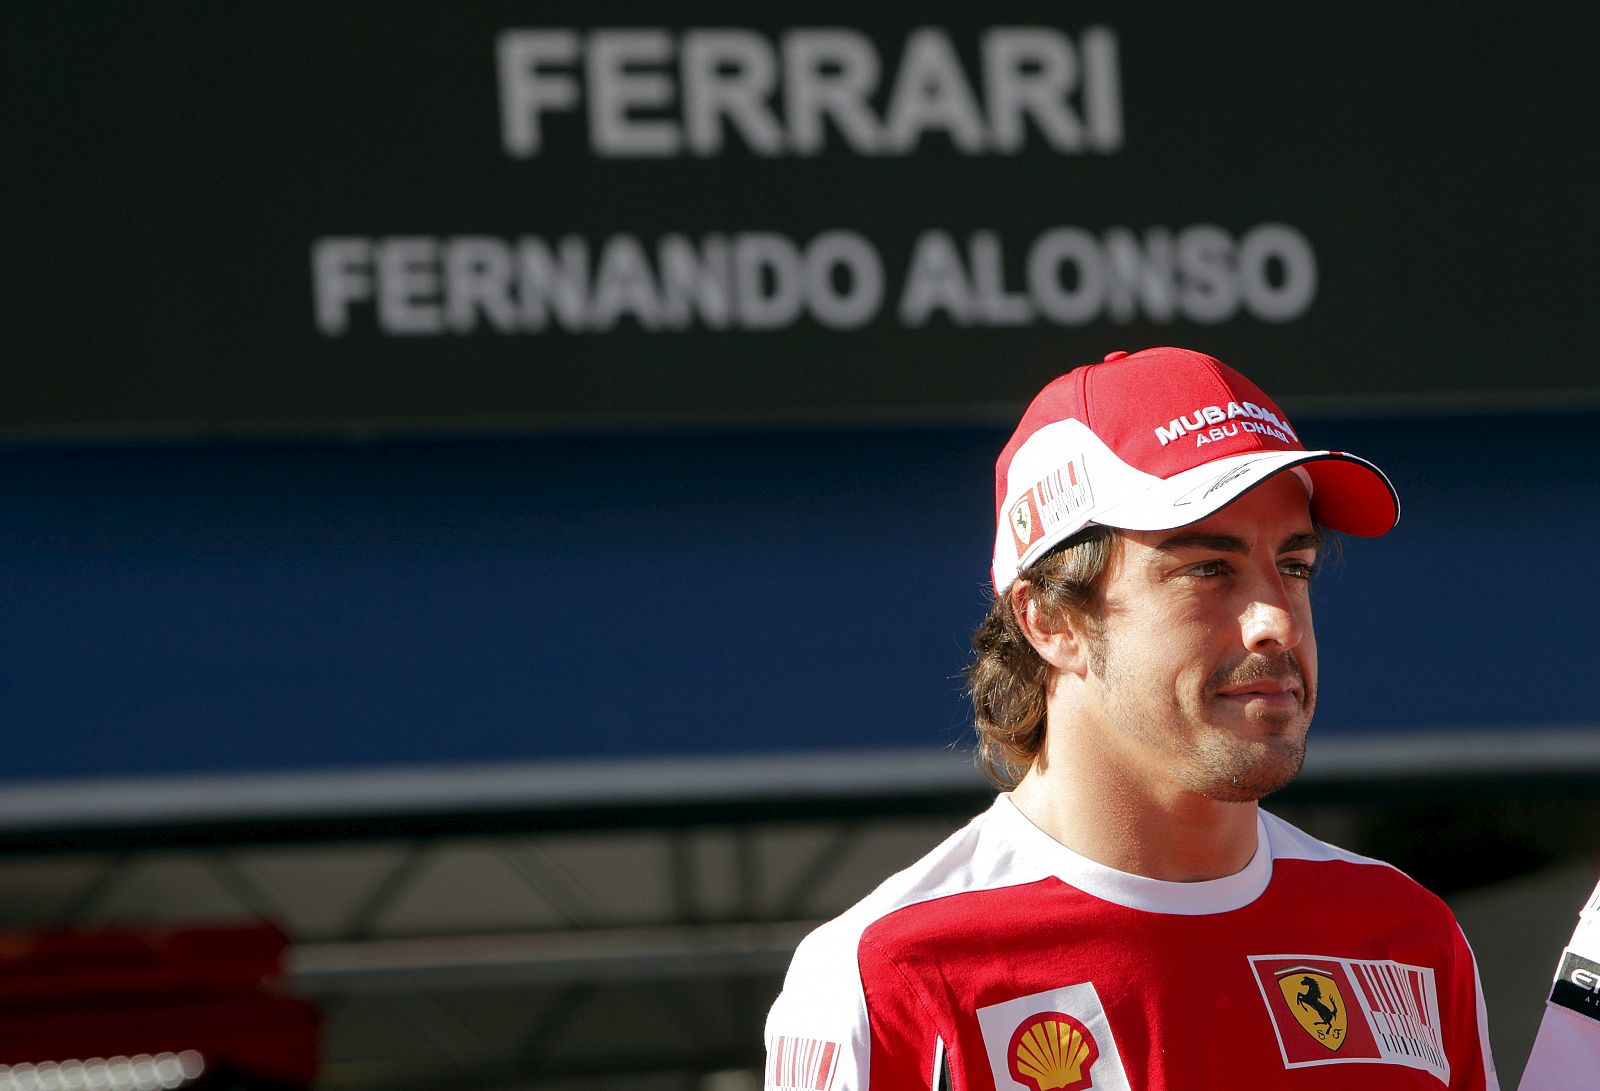 El piloto español de la escudería Ferrari de Fórmula Uno, Fernando Alonso